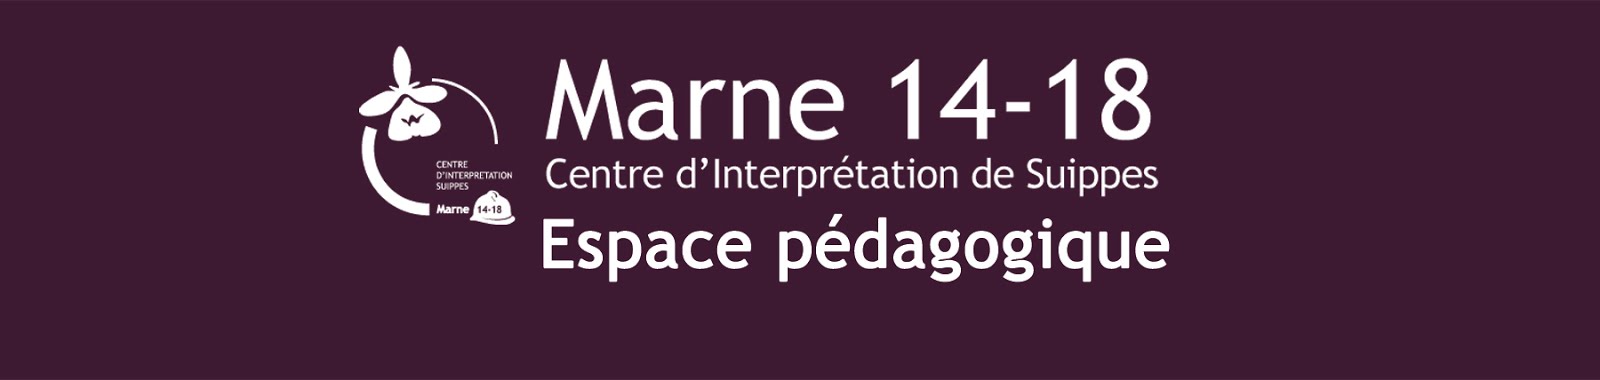 Espace pédagogique de Marne 14-18